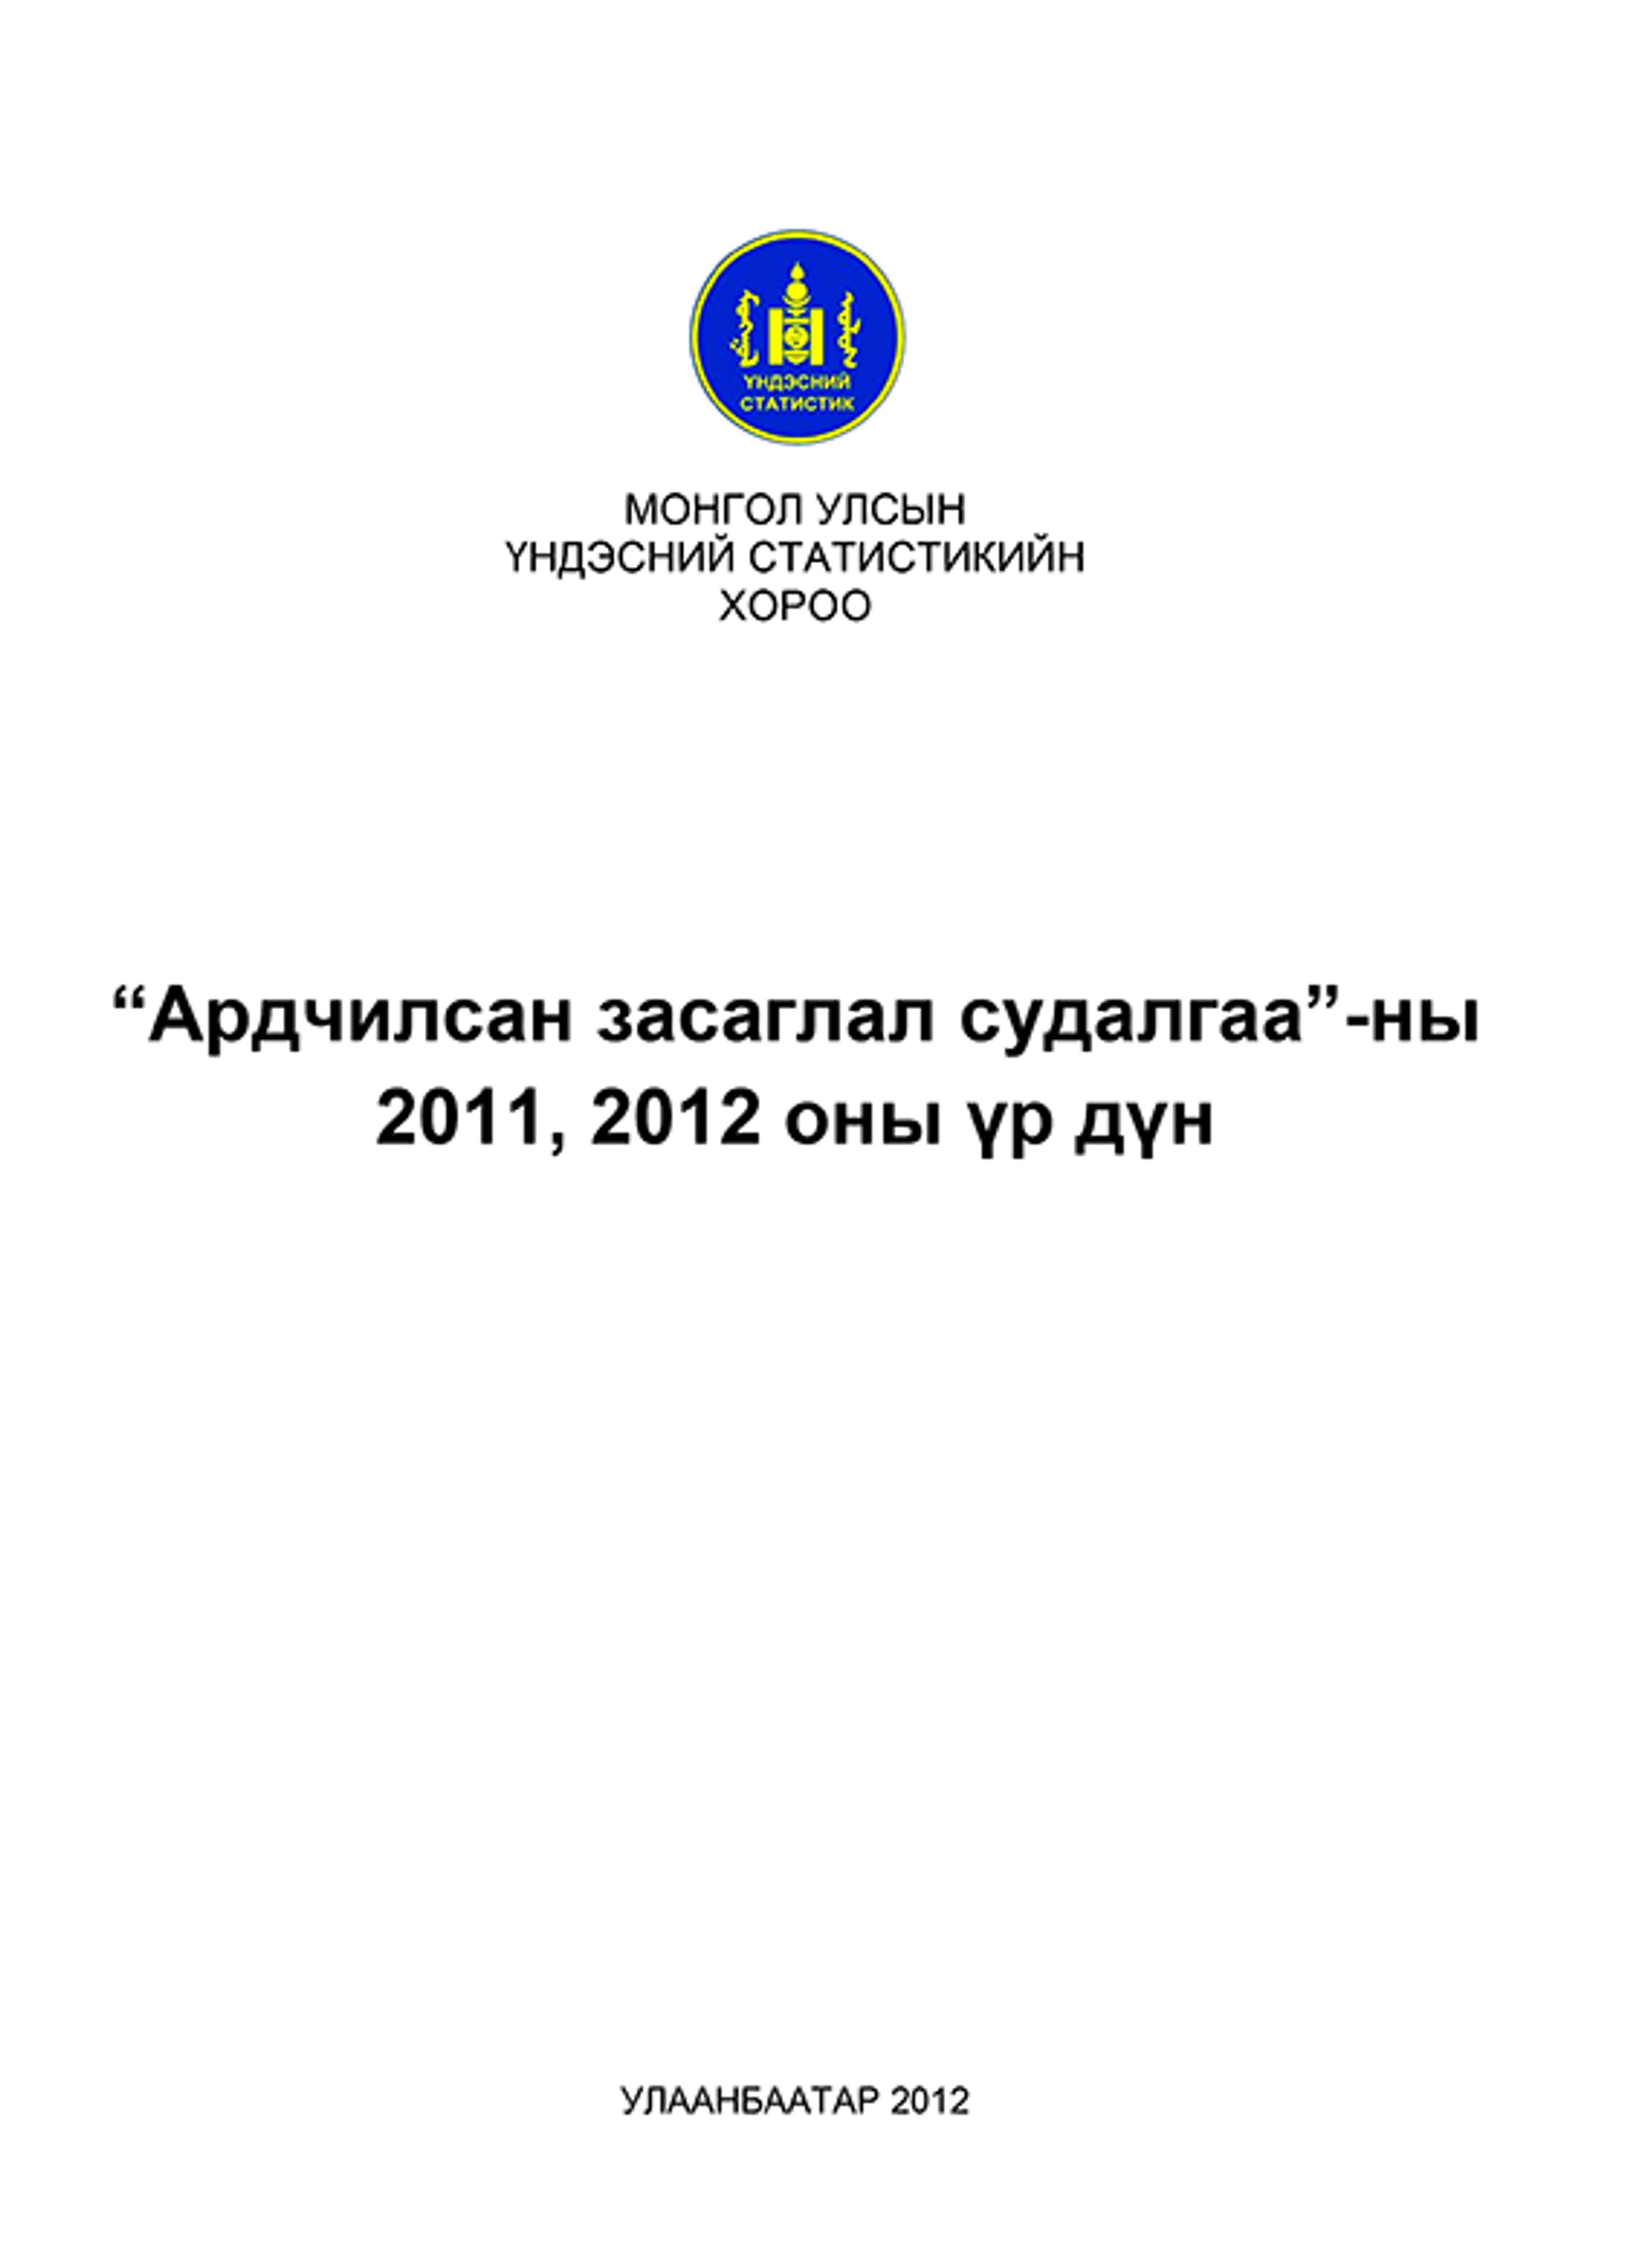 Ардчилсан засаглал судалгаа-2011, 2012